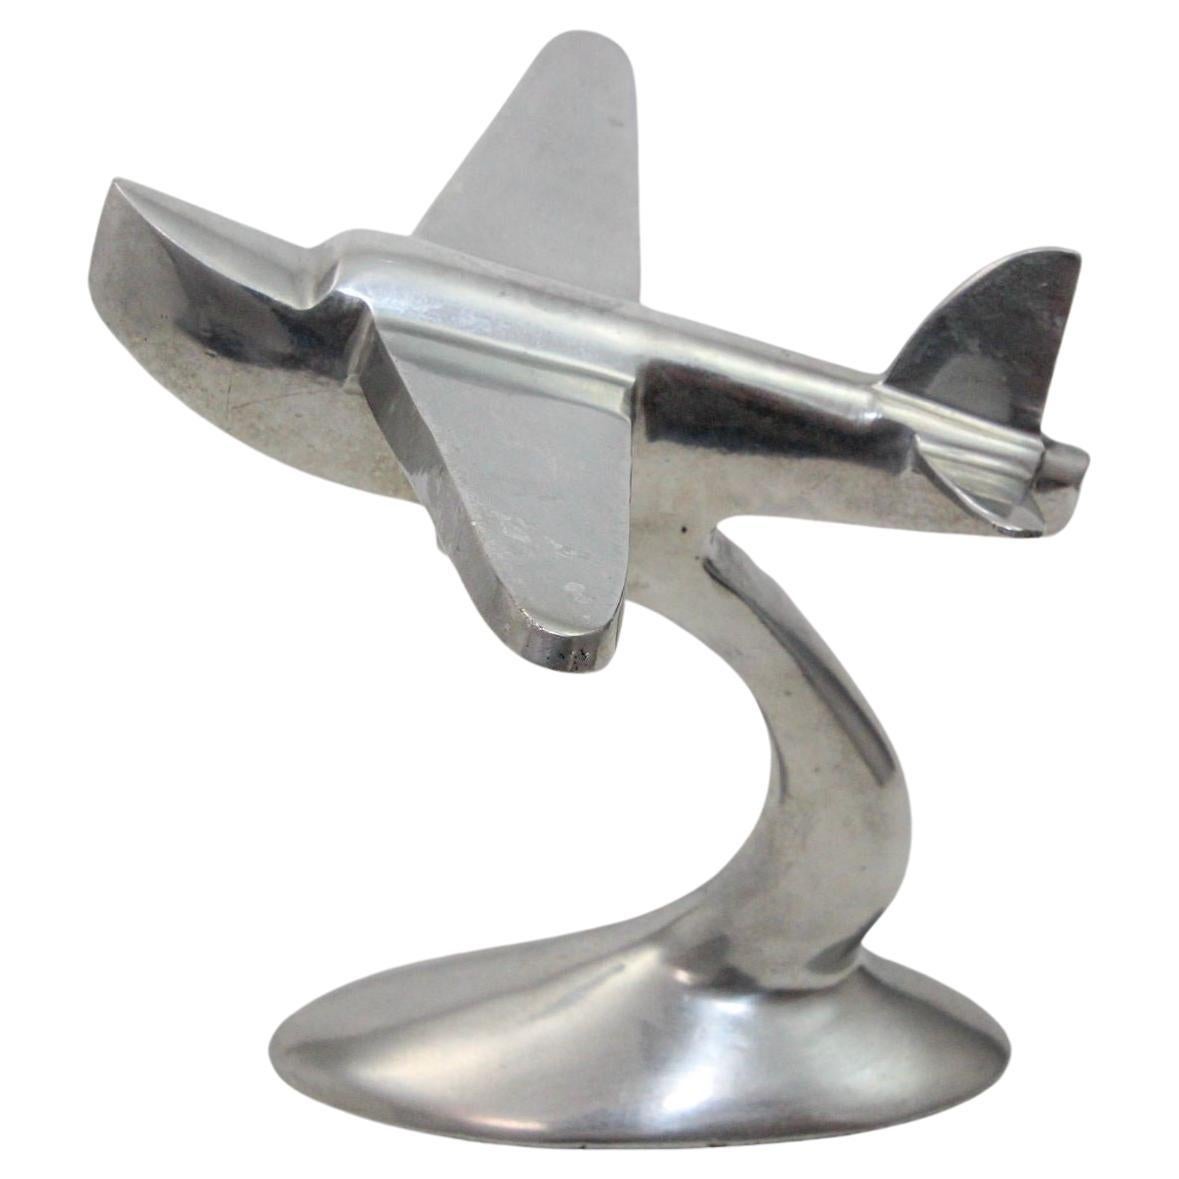 Art Deco Airplane Sculpture of the Boeing 314 Clipper Cast Aluminium